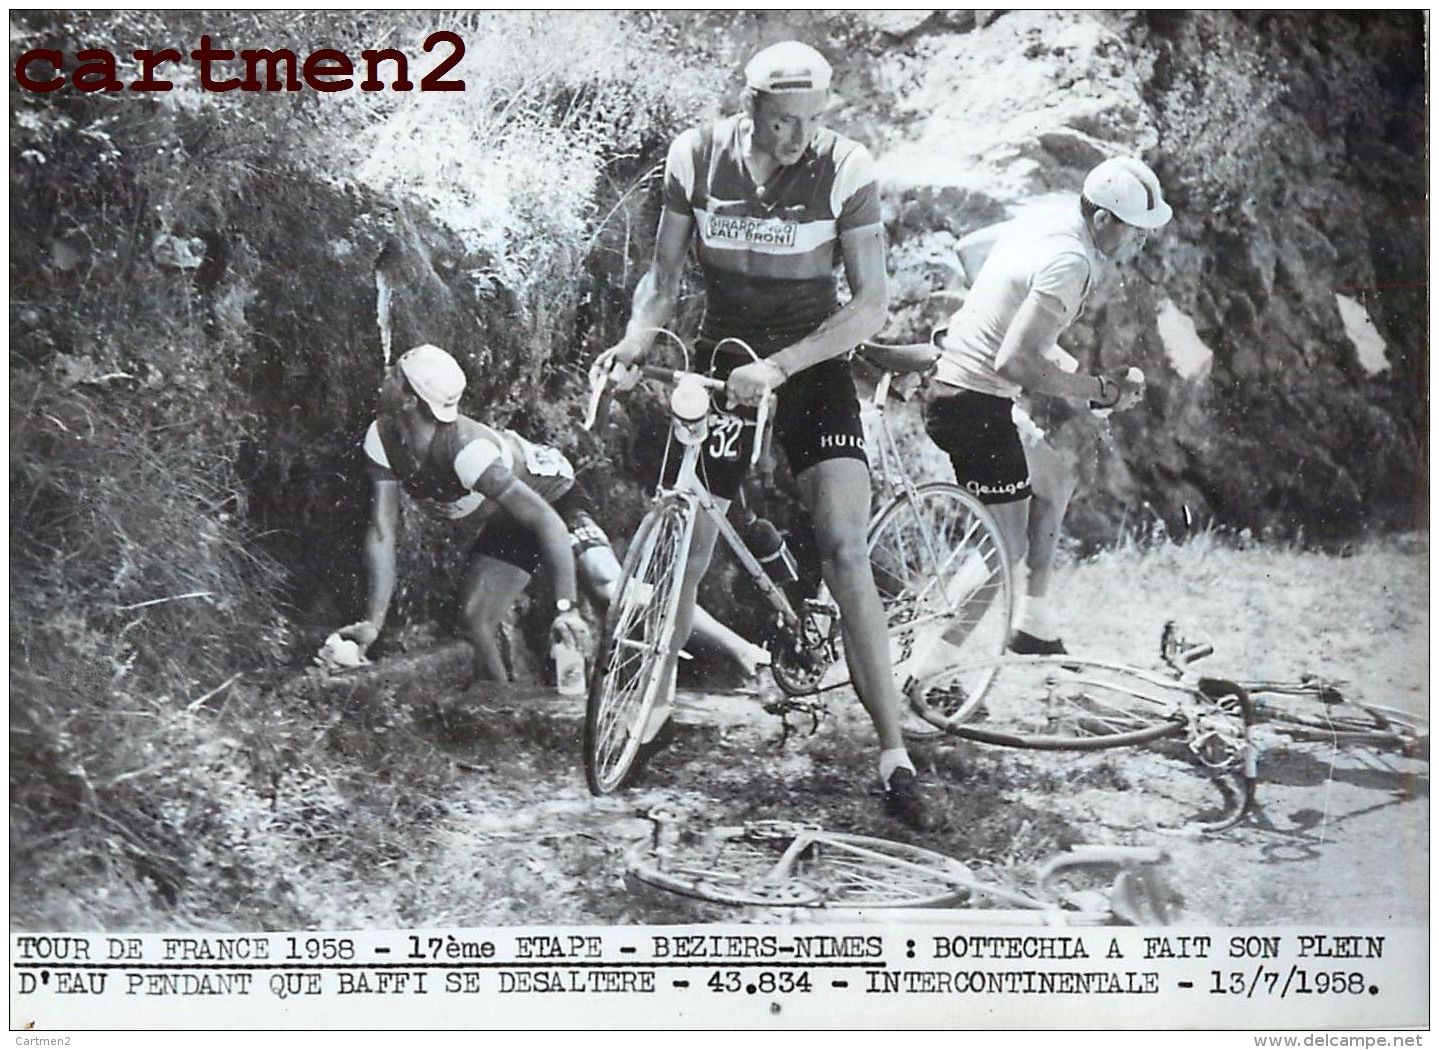 PHOTOGRAPHIE ANCIENNNE TOUR DE FRANCE 1958 BEZIERS-NIMES BOTTECHIA CYCLISME SPORT CYCLISTE INTERCONTINENTALE - Sports